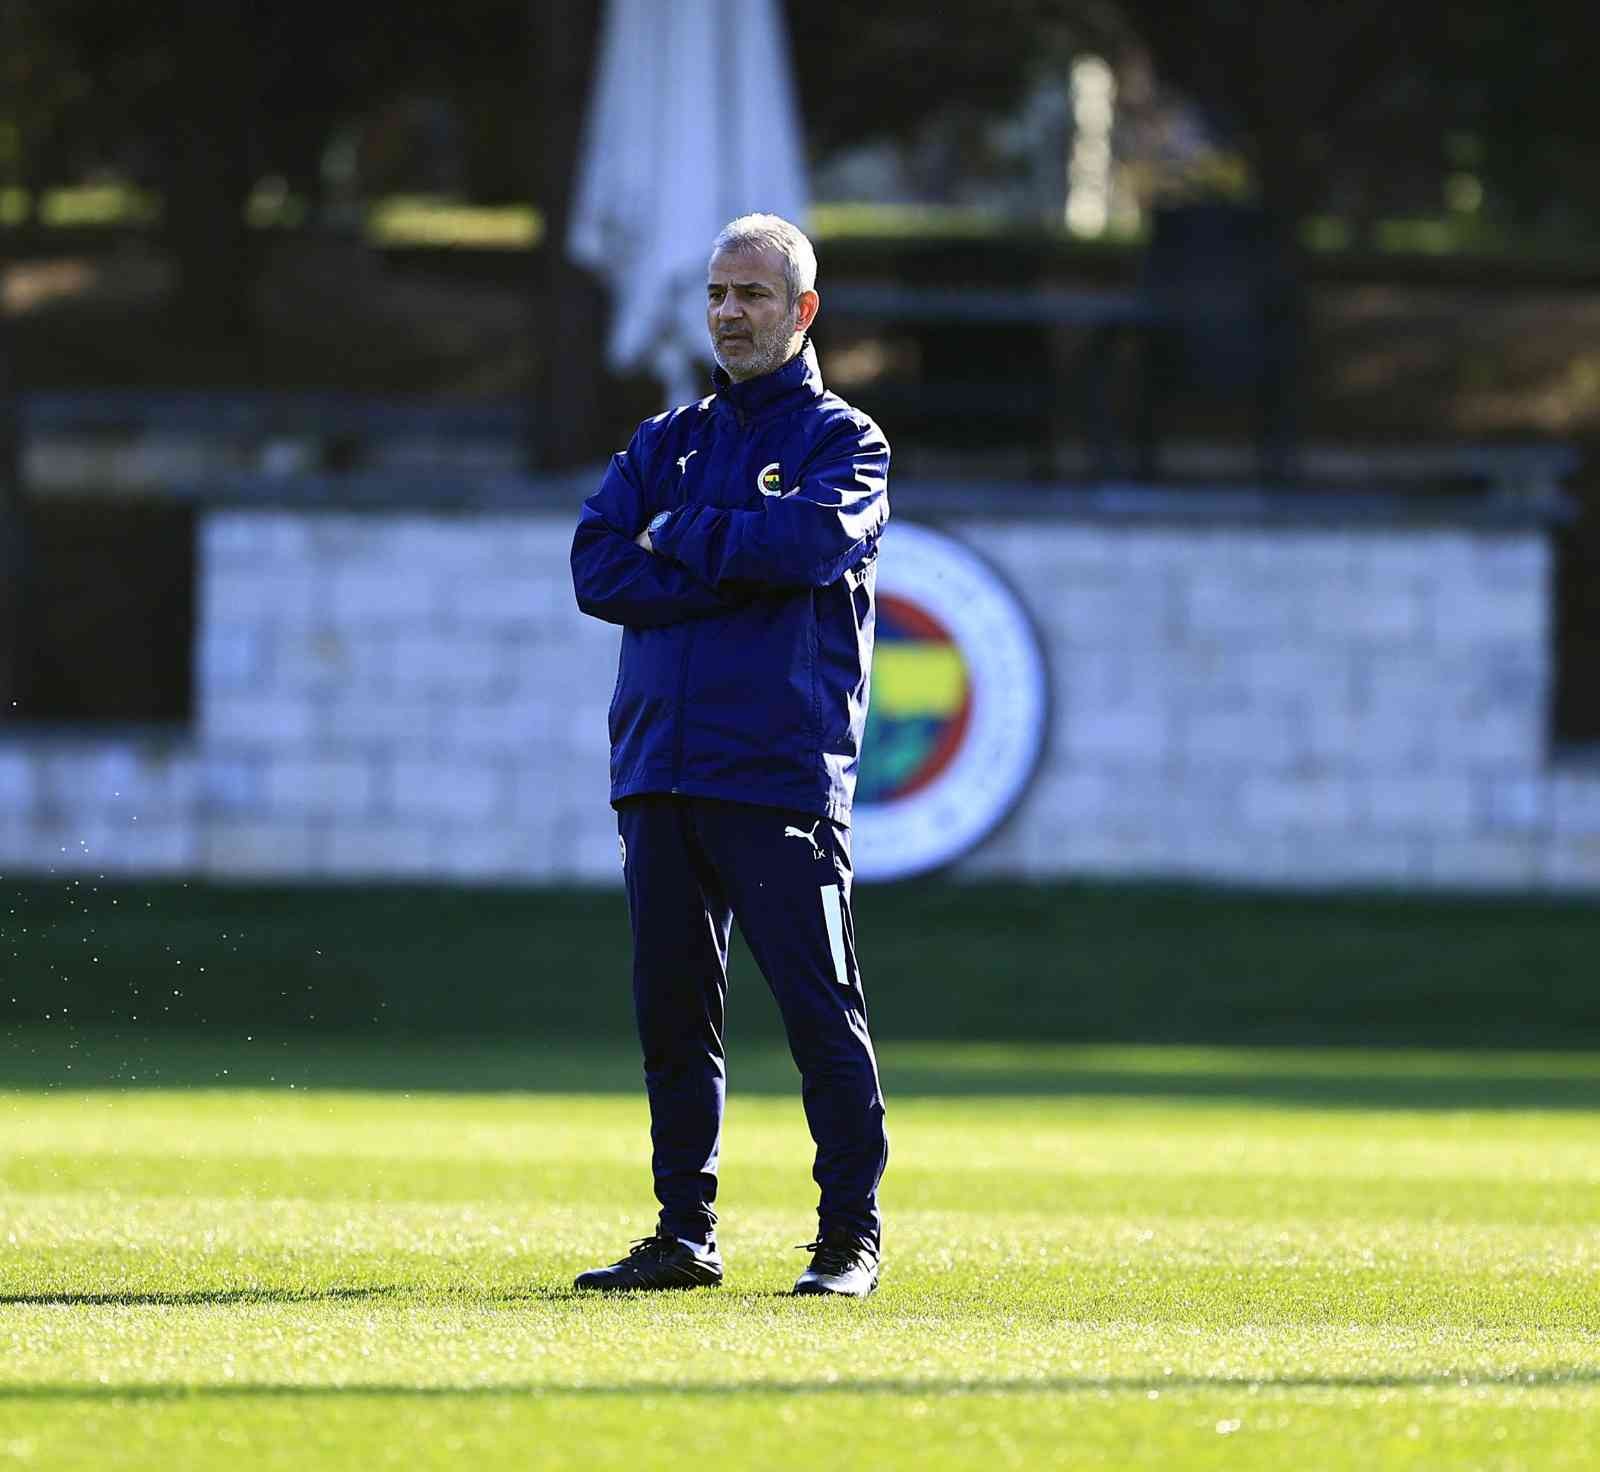 Fenerbahçe Teknik Direktörü İsmail Kartal, 2014-2015 sezonunda takım otobüsünün kurşunlanması olayını anlatırken, "Fenerbahçe, 3 Temmuz ve ...